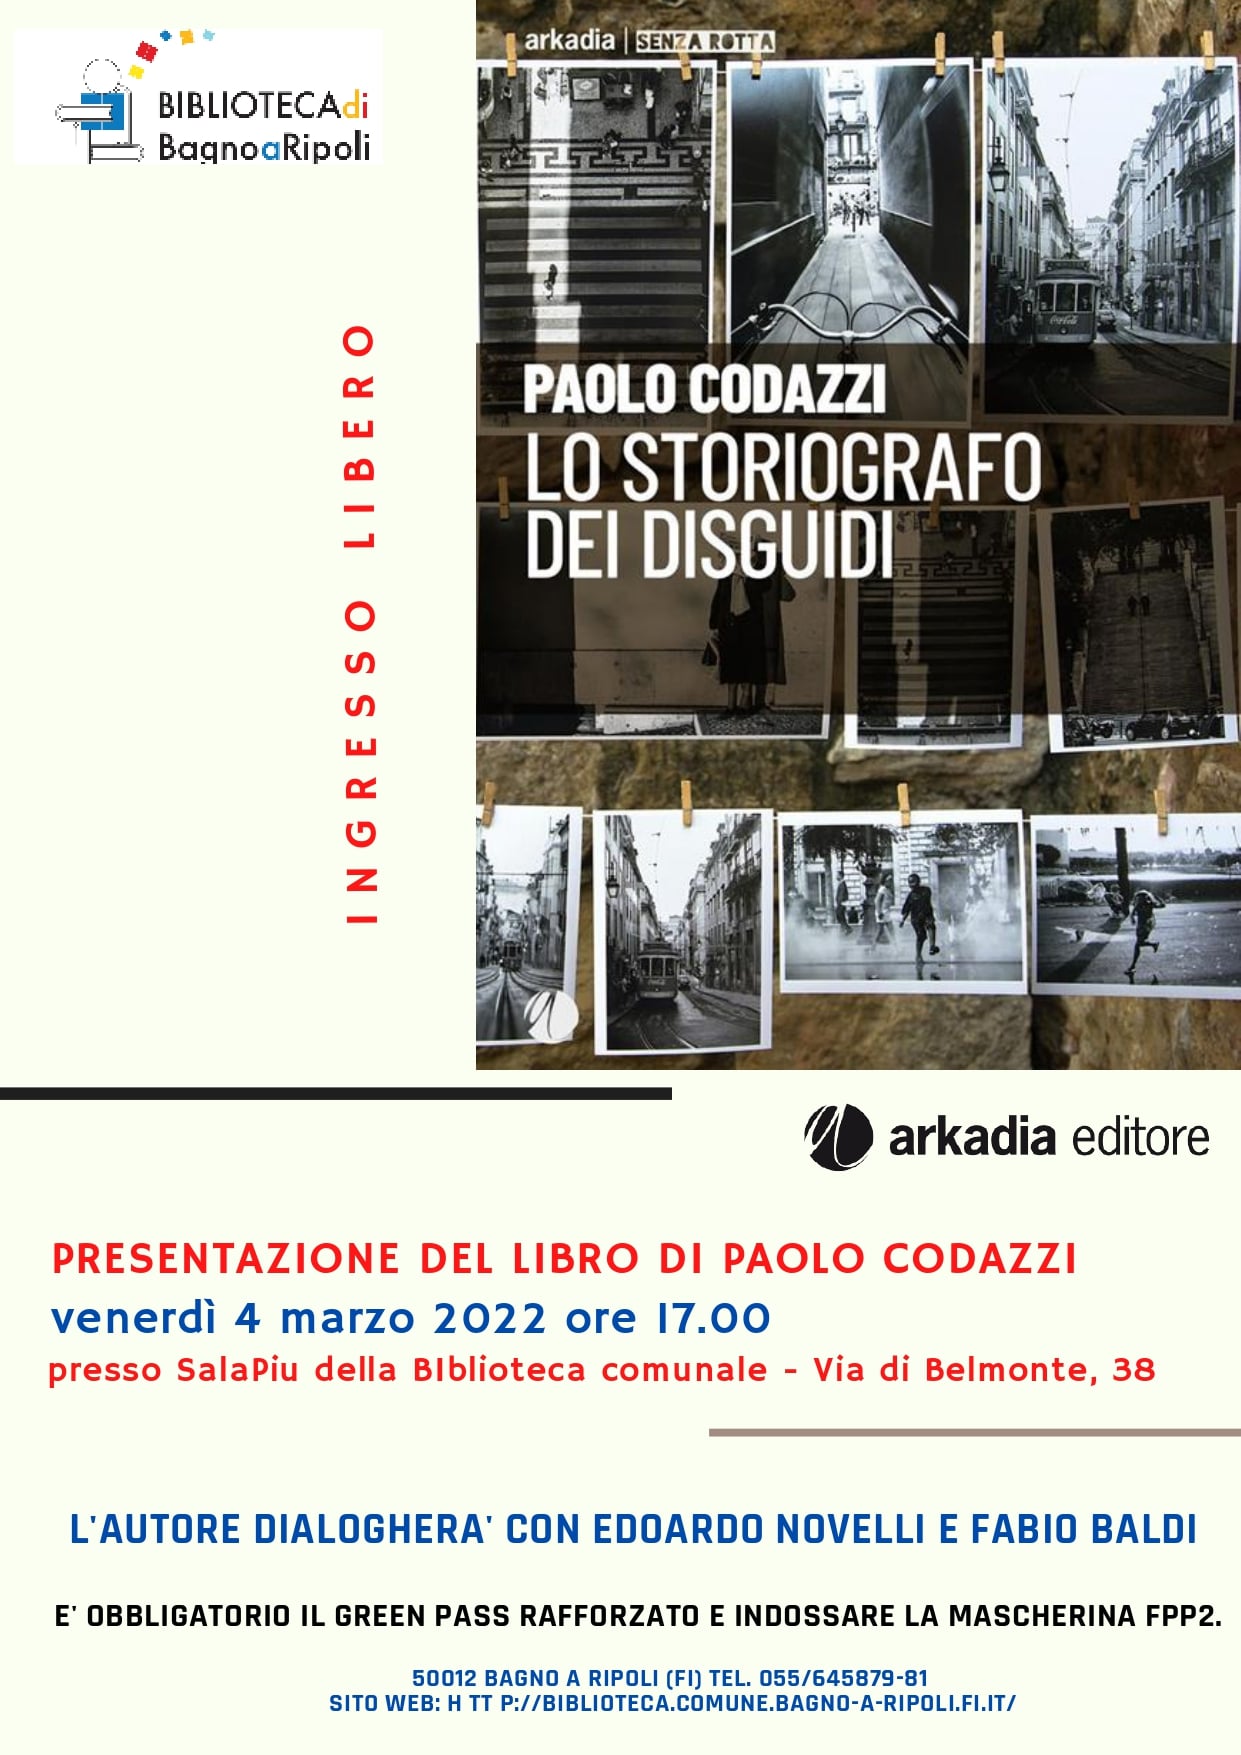 La locandina della presentazione del libro di Paolo Codazzi 'Lo storiografo dei disguidi' a Bagno a Ripoli